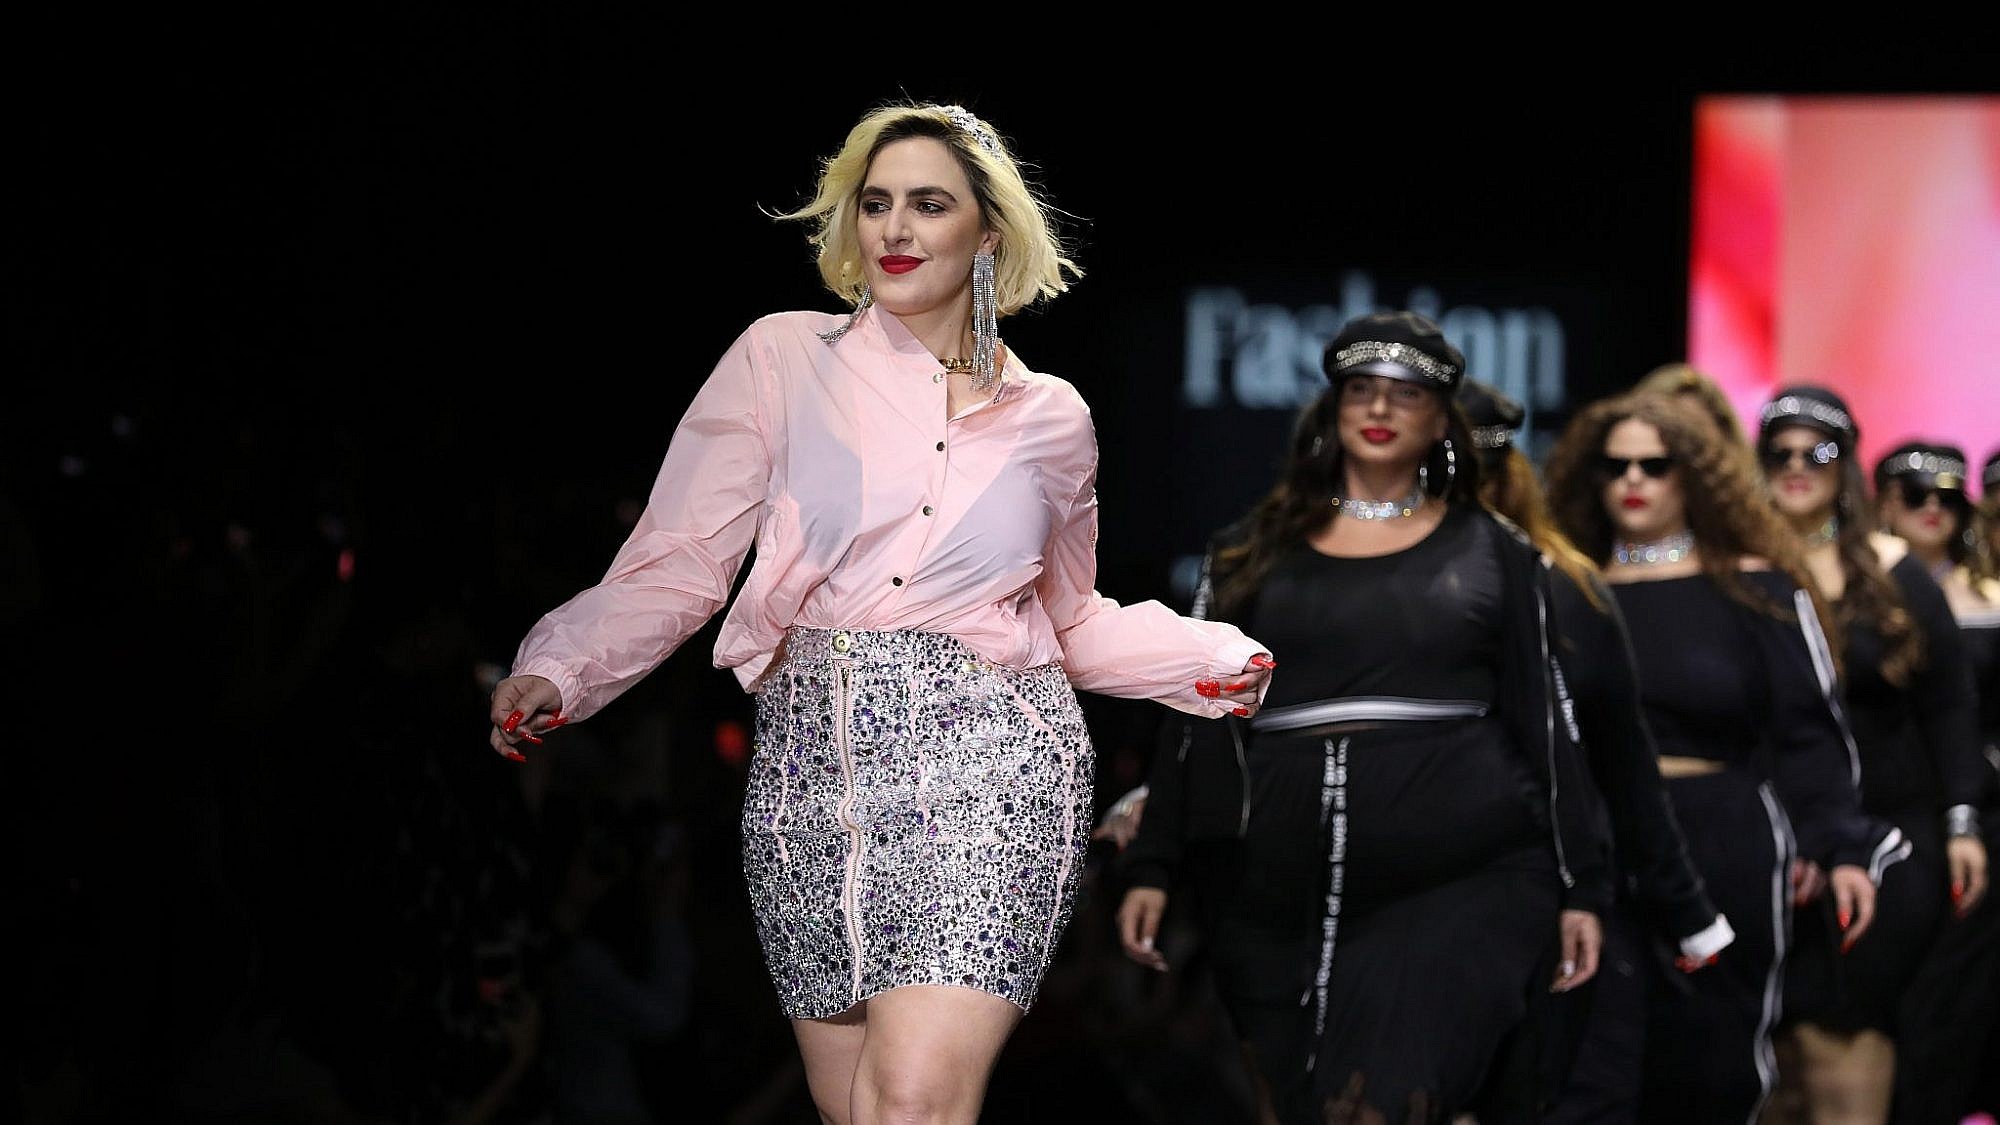 ריי שגב  ודוגמניות ג'וסי בתצוגה של RETEMA בשבוע האופנה תל אביב 2019. צילום אדריאן סבל